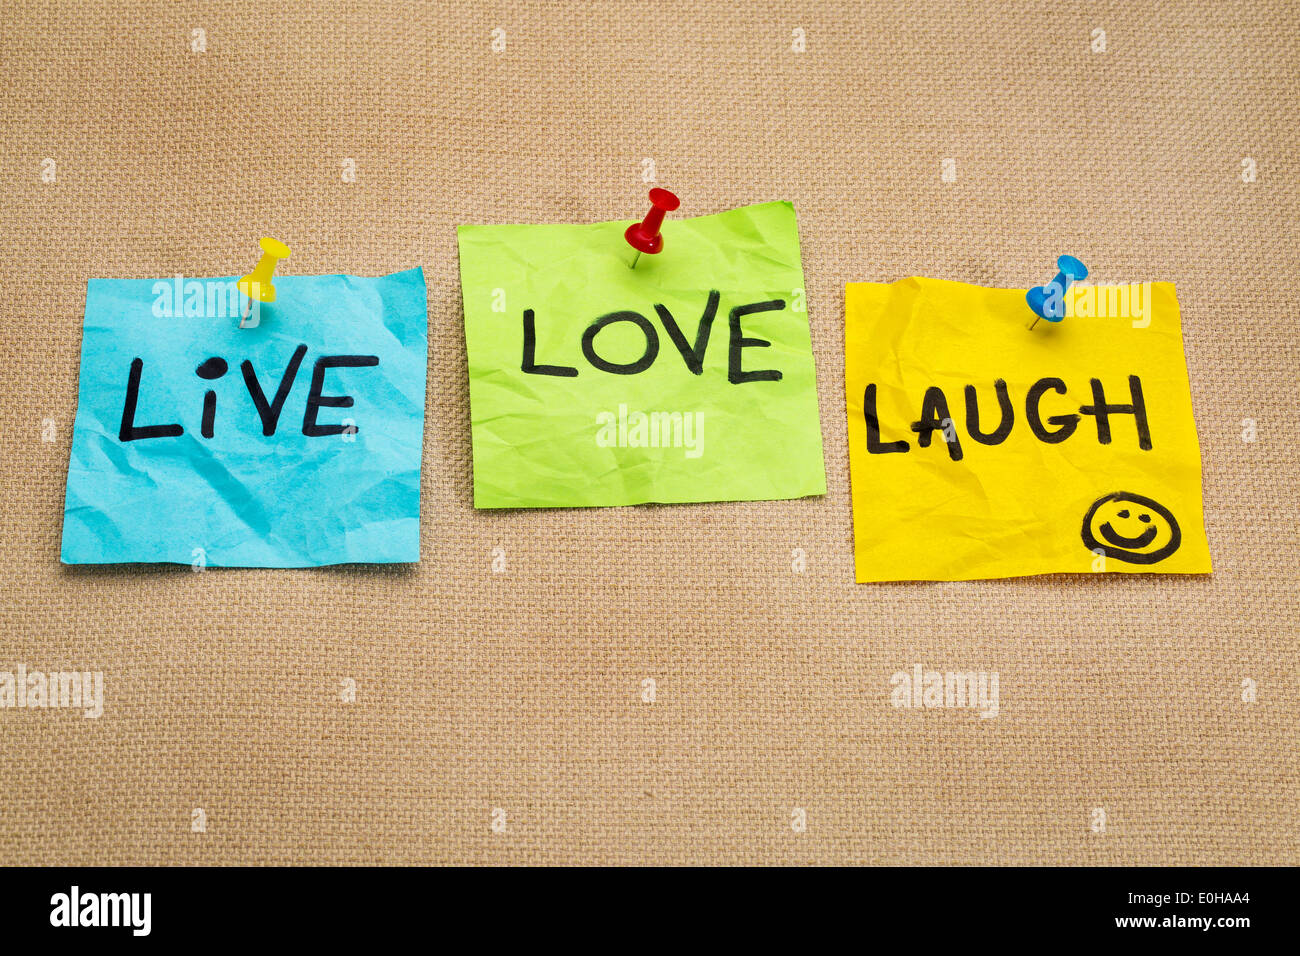 Leben Sie, lieben Sie, lachen Sie-motivierende Worte auf Haftnotiz Mahnungen Stockfoto